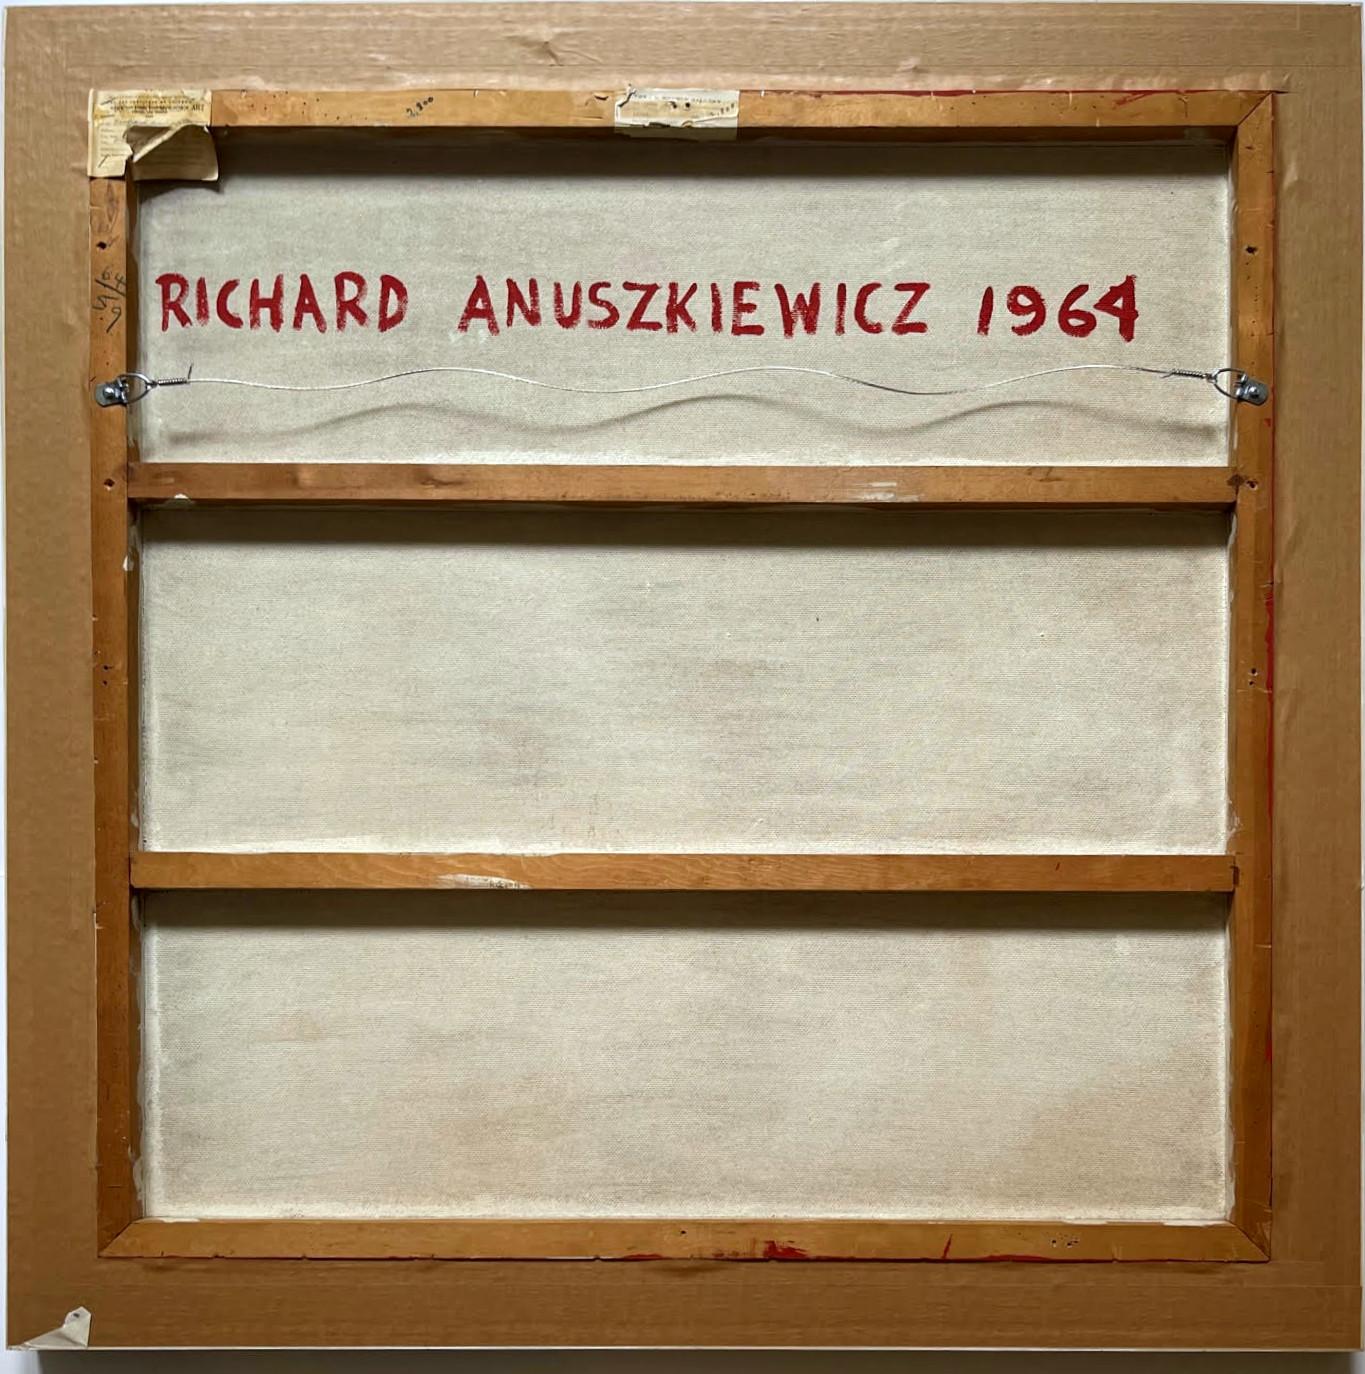 richard anuszkiewicz artwork